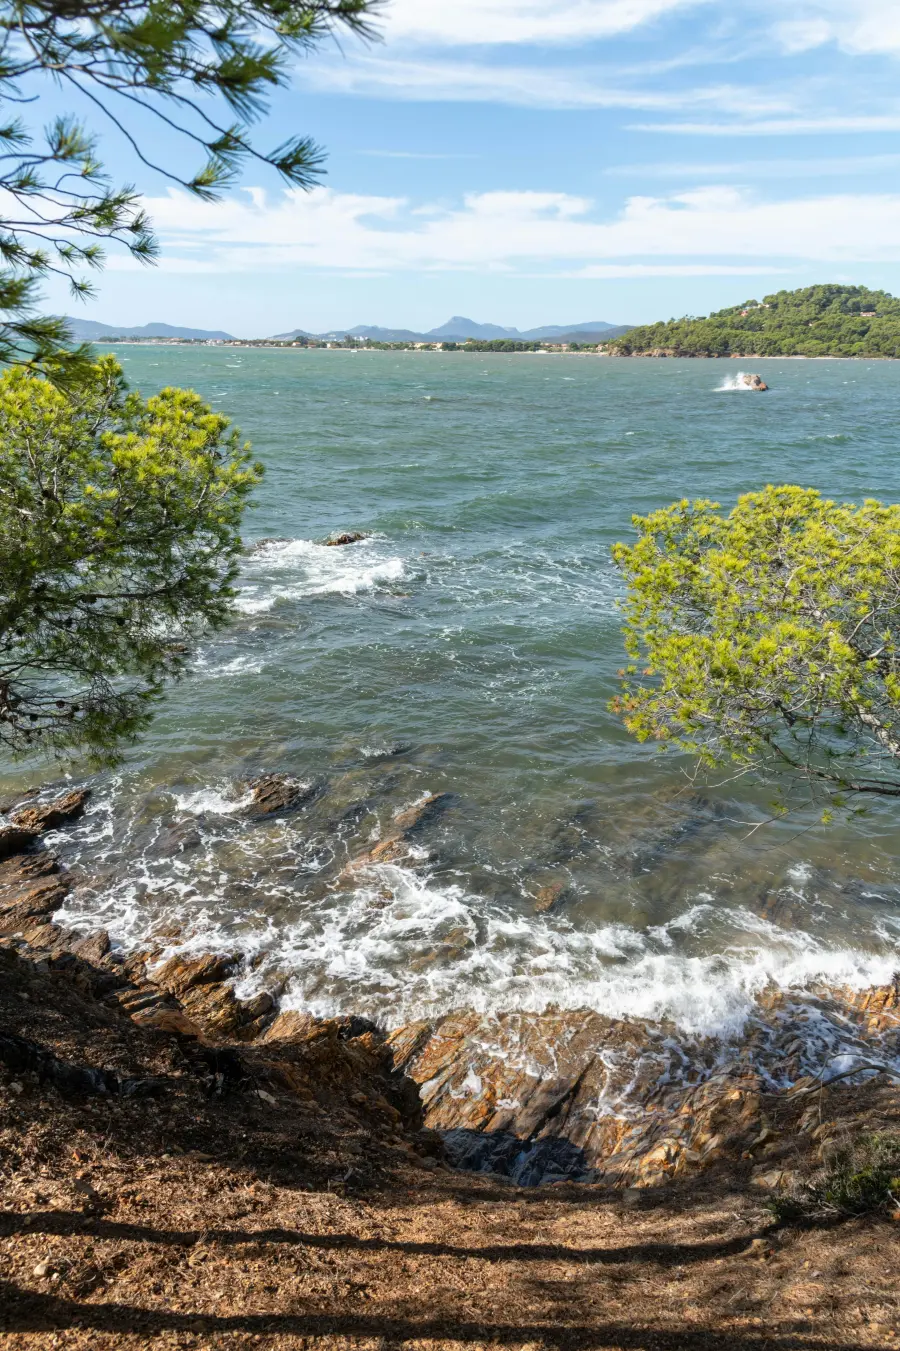 Stjenovita obala s valovima koji zapljuskuju stijene, uokvirena borovim granama, s pogledom na slikovitu obalu i brda u daljini